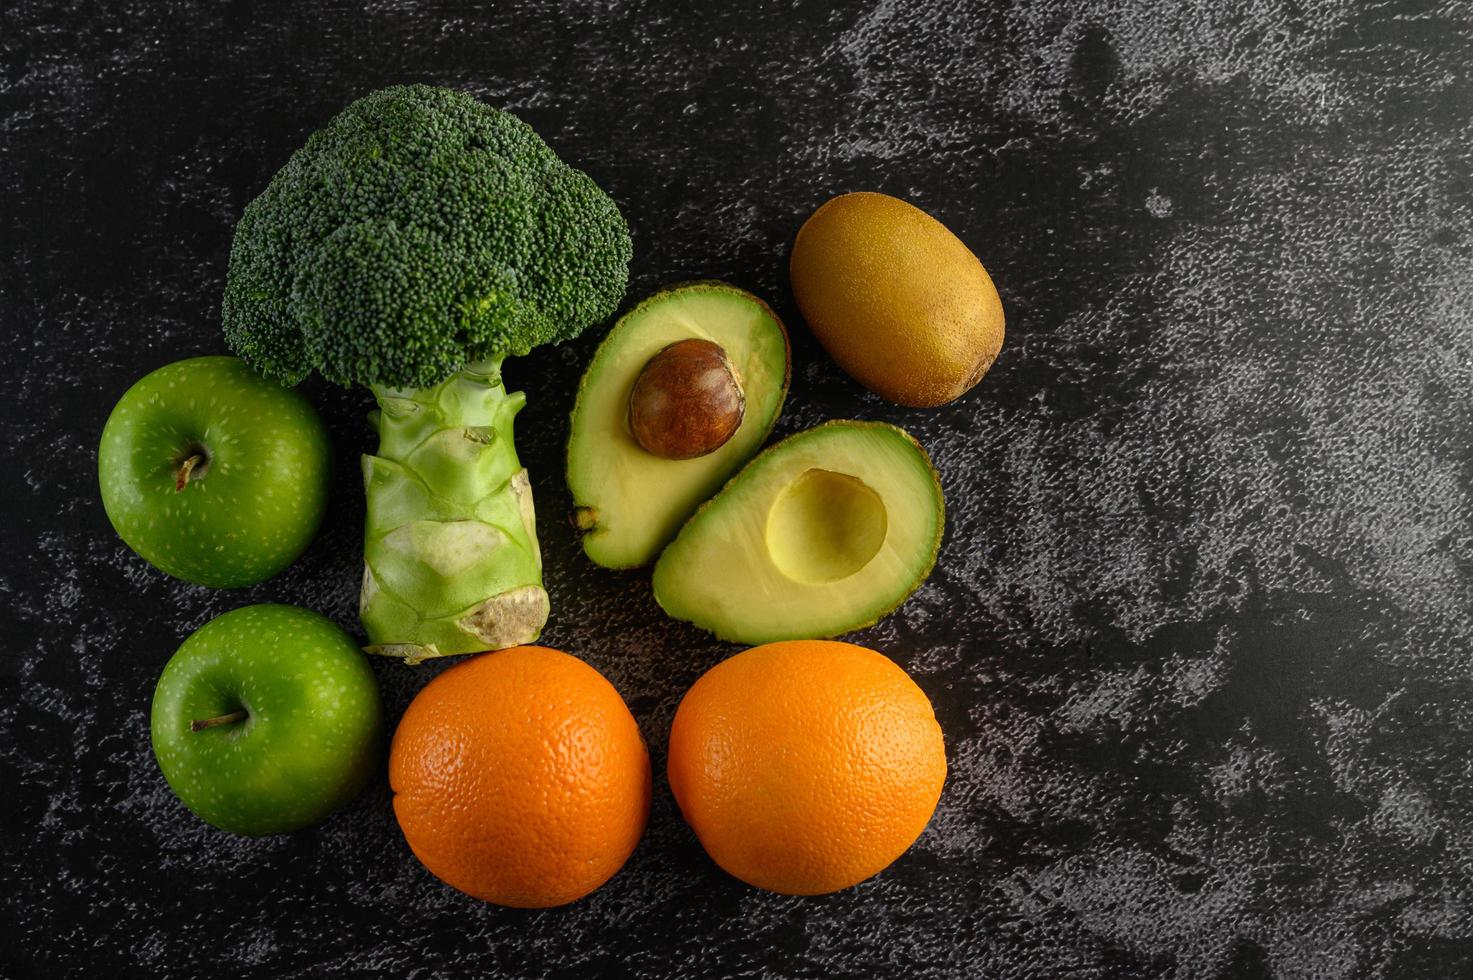 Brokkoli, Apfel, Orange, Kiwi und Avocado auf einem schwarzen Zementbodenhintergrund foto